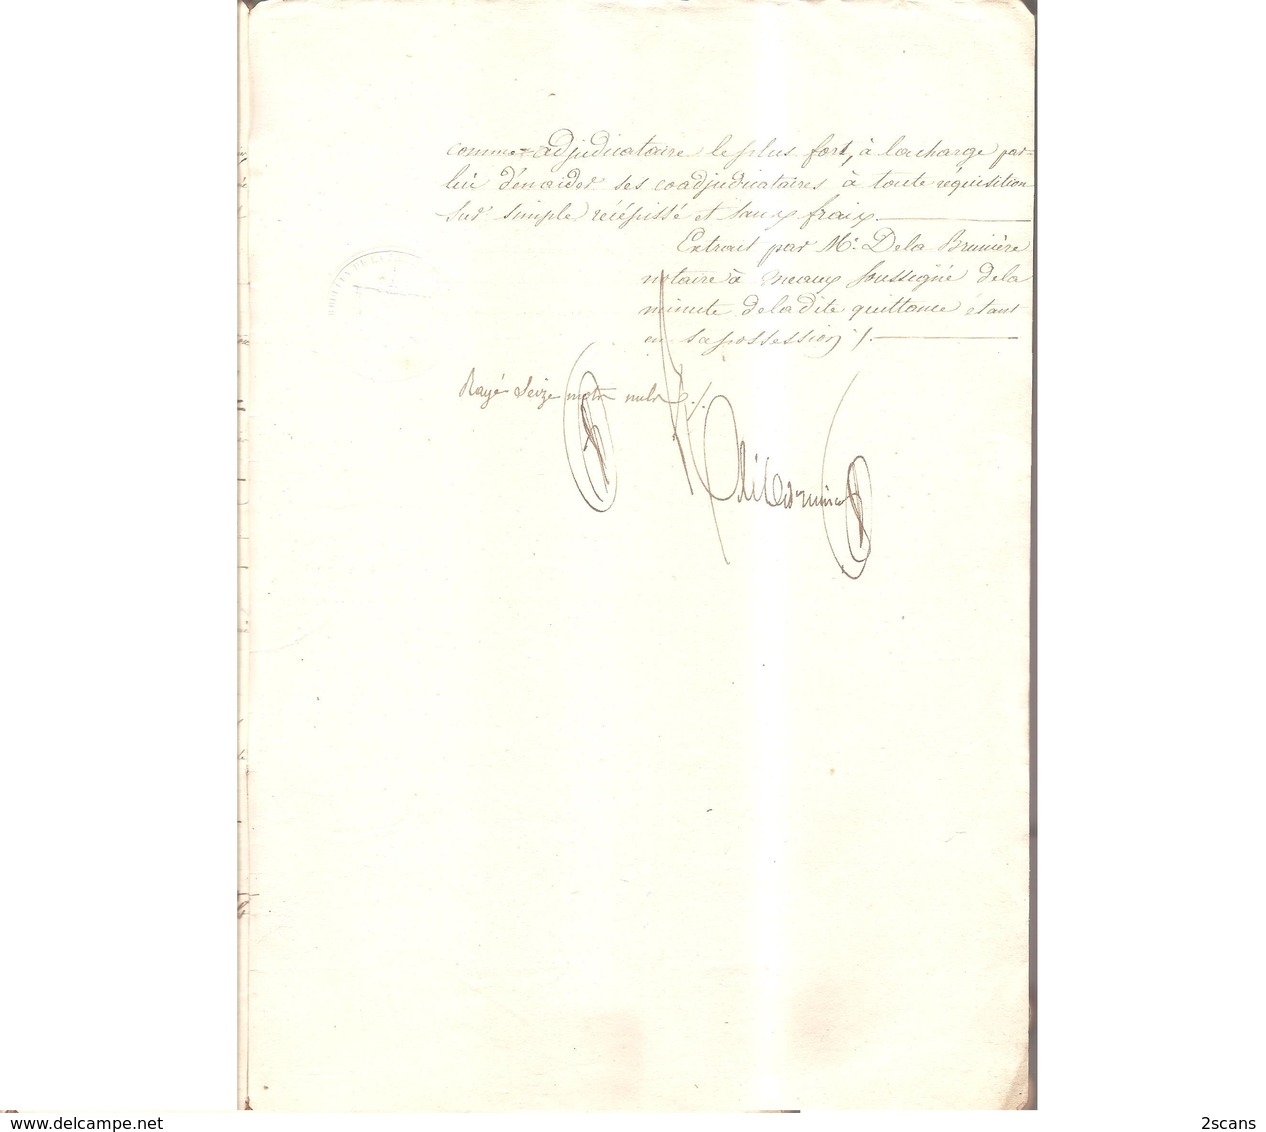 Dépt 77 - VILLENOY - Janvier 1845 - Quittance par M. LOYAU à M. GERMAIN et autres - (PLICQUE, COUTELET, DÉLÉPINE, Meaux)